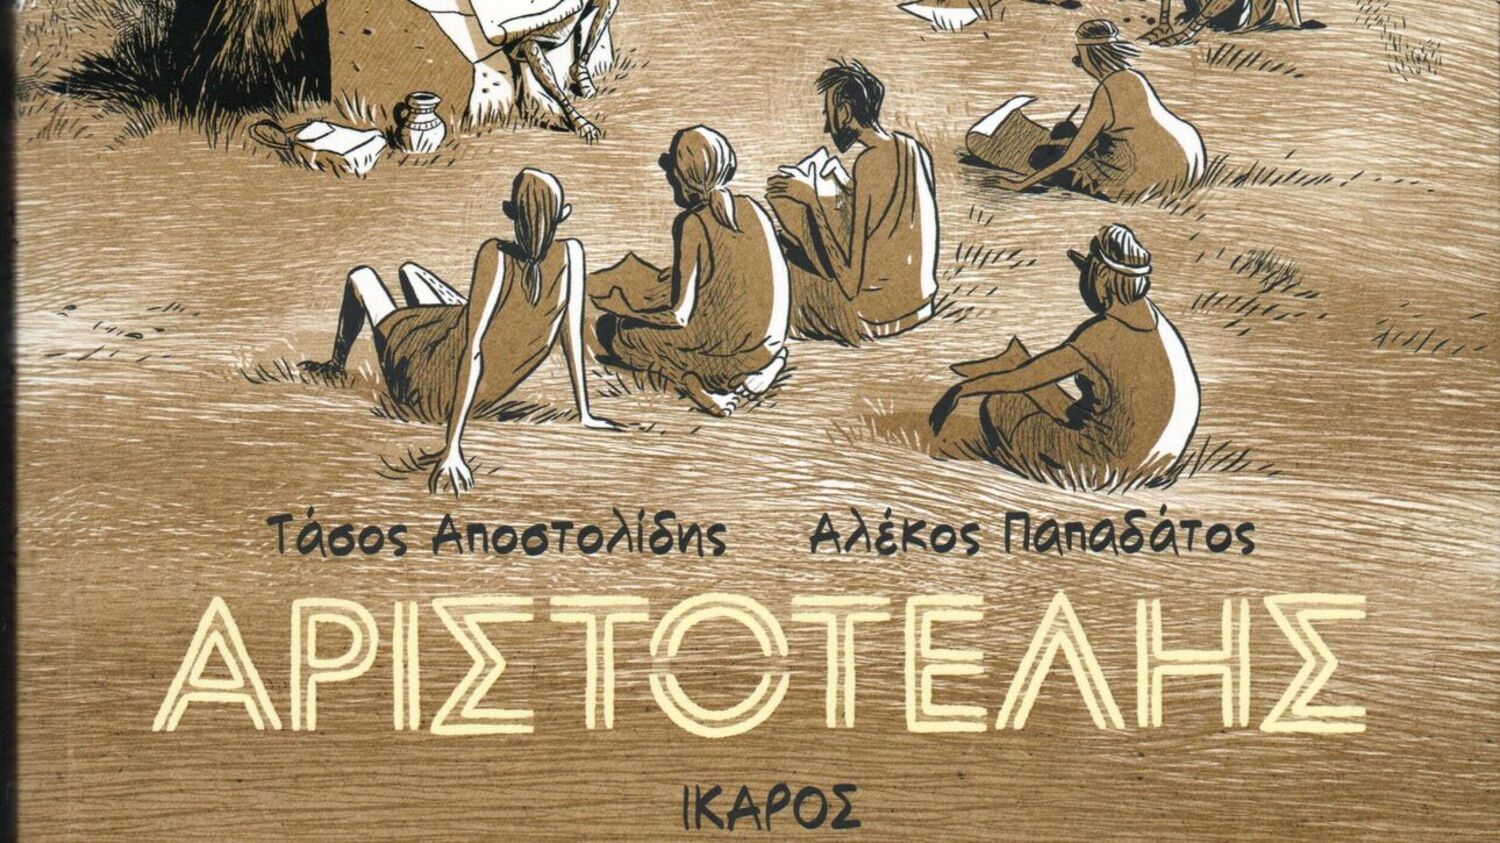 Ο Αριστοτέλης «ταξιδεύει» σε όλο τον κόσμο μέσα από τις σελίδες ενός κόμικ